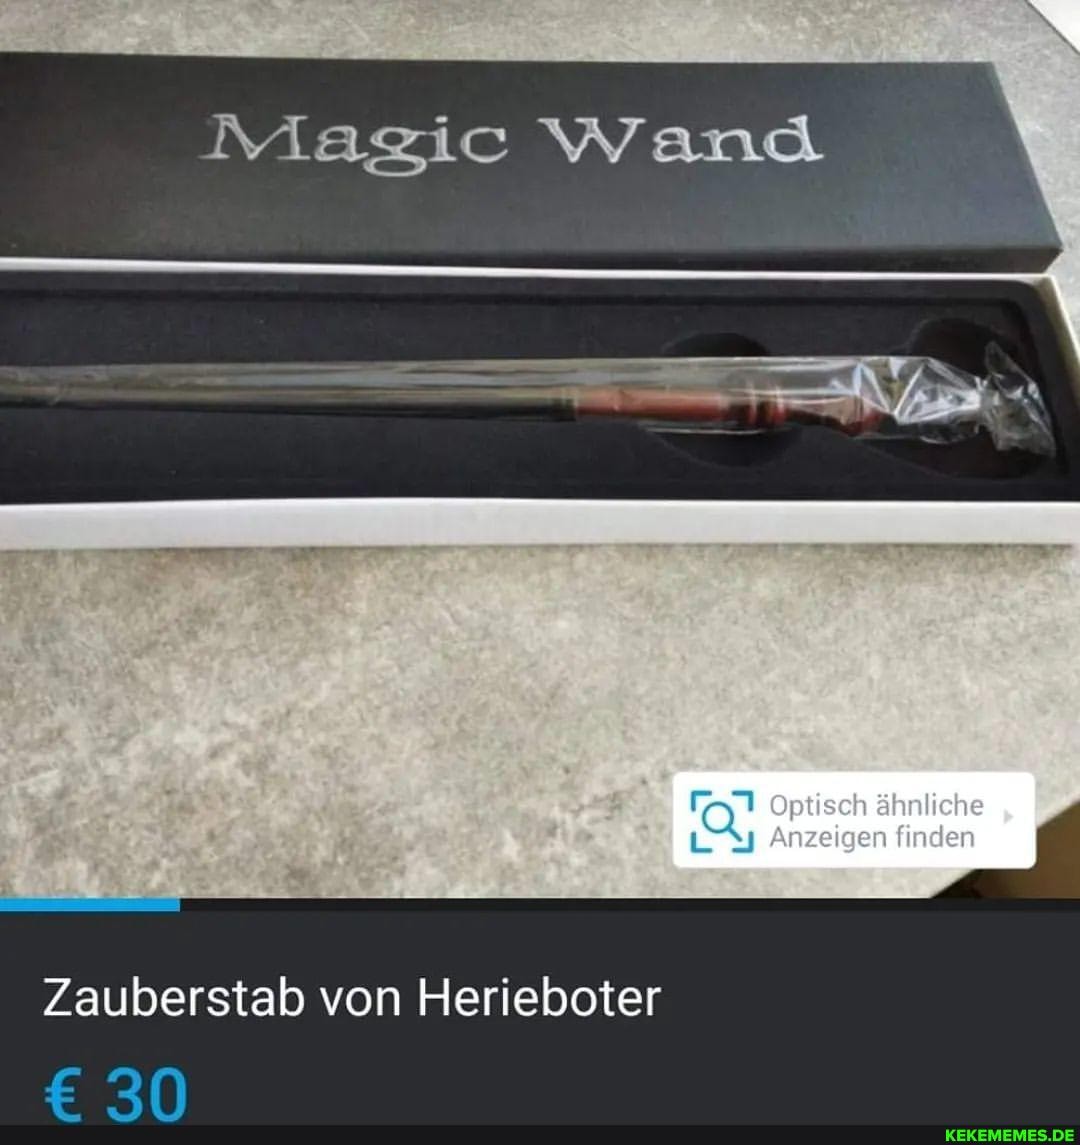 Magic Wand ) Optisch ähnliche Anzeigen finden Zauberstab von Herieboter